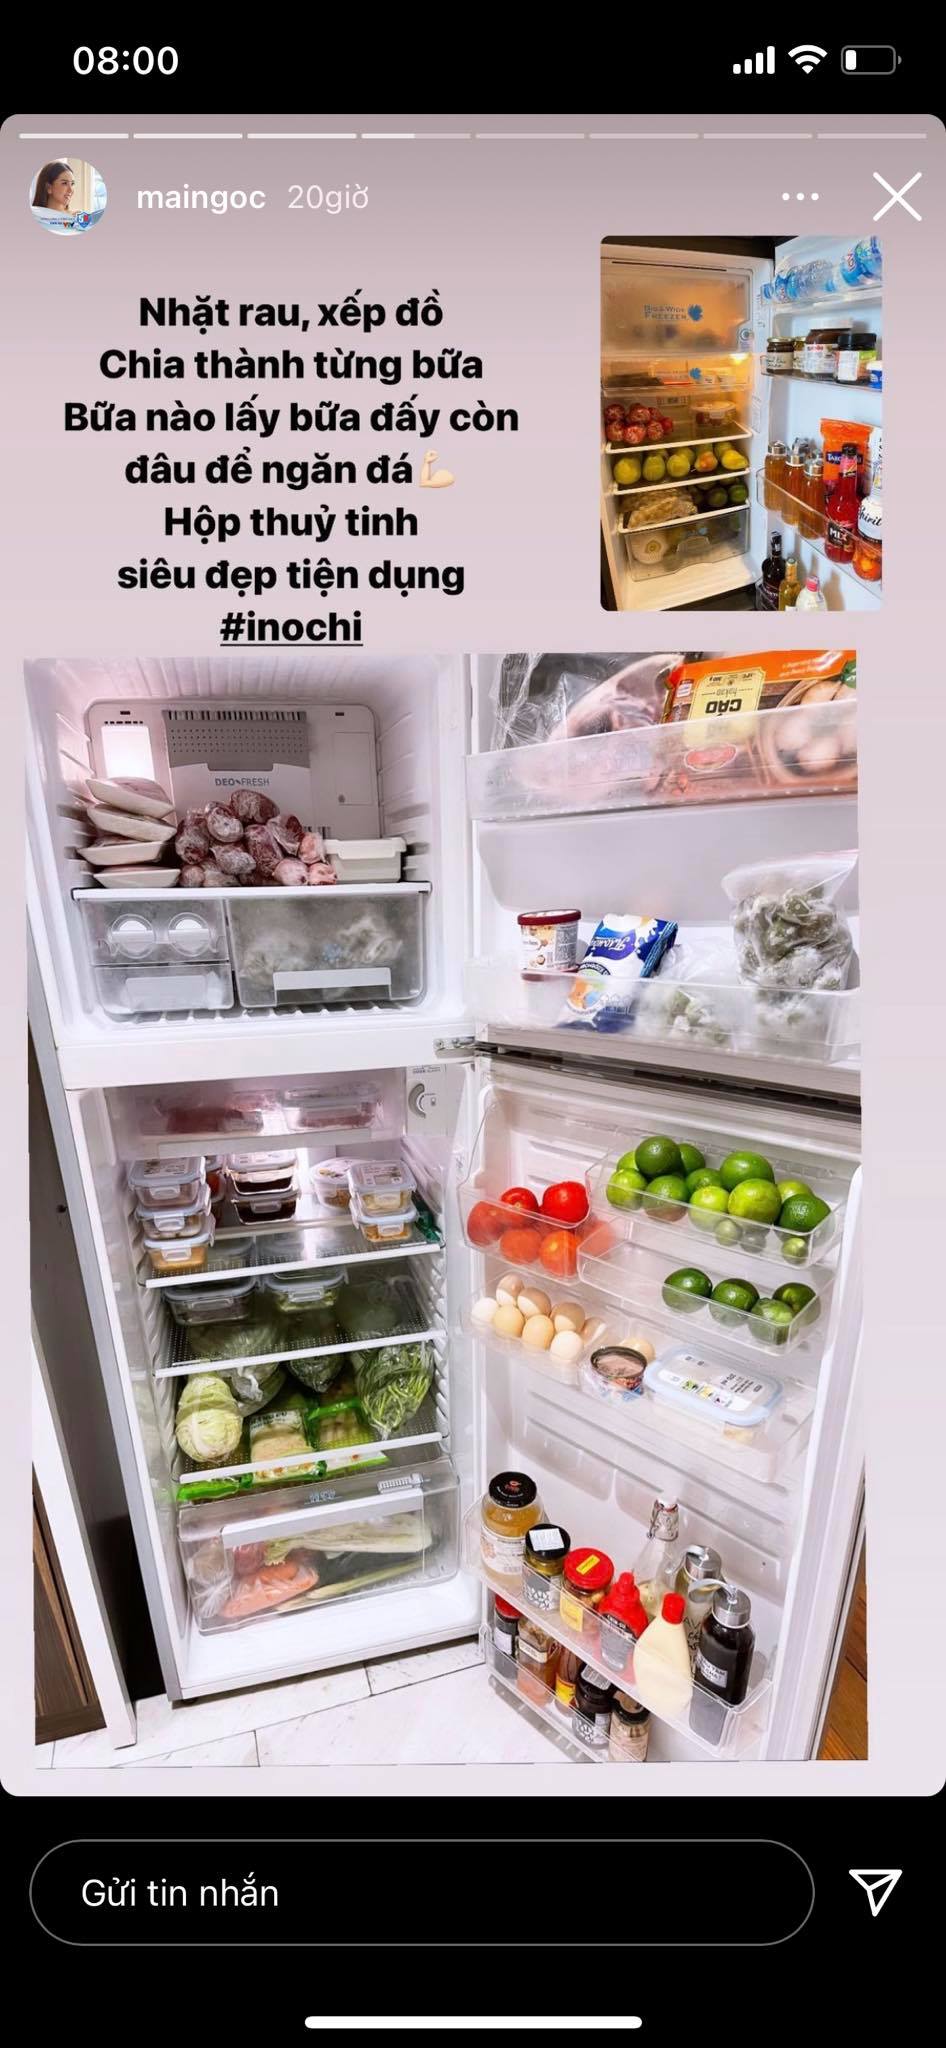 Chiếc tủ lạnh đầy đồ được MC Mai Ngọc sắp xếp đâu vào đấy.